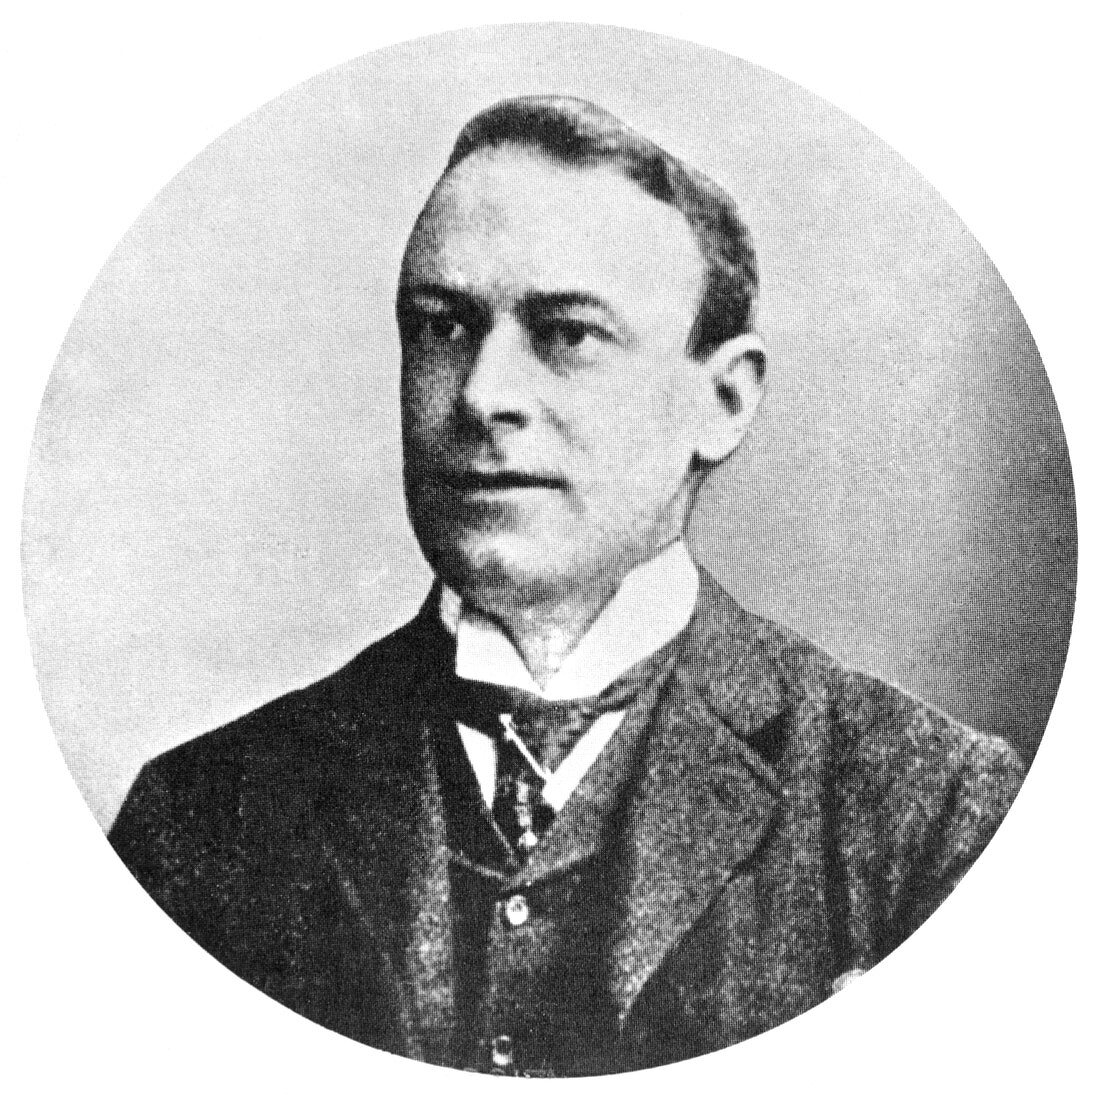 Thomas Andrews,chief designer of the Titanic